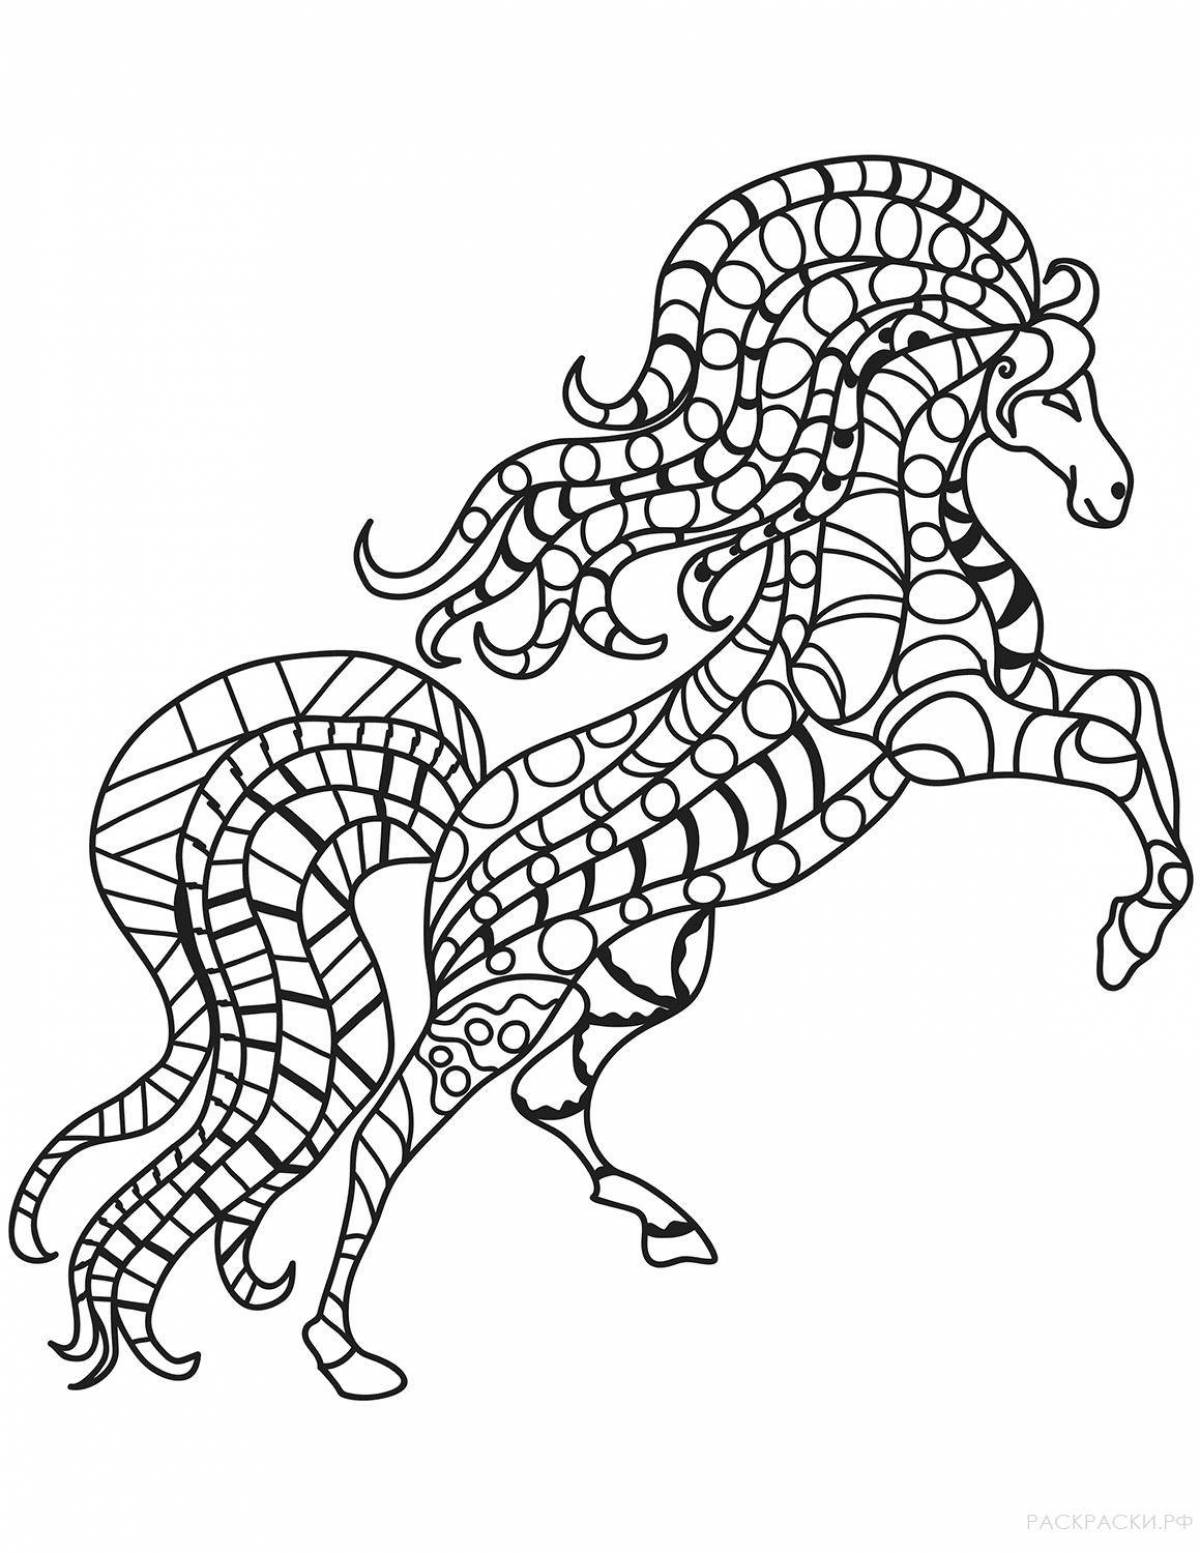 Мозаика кони раскраска для детей